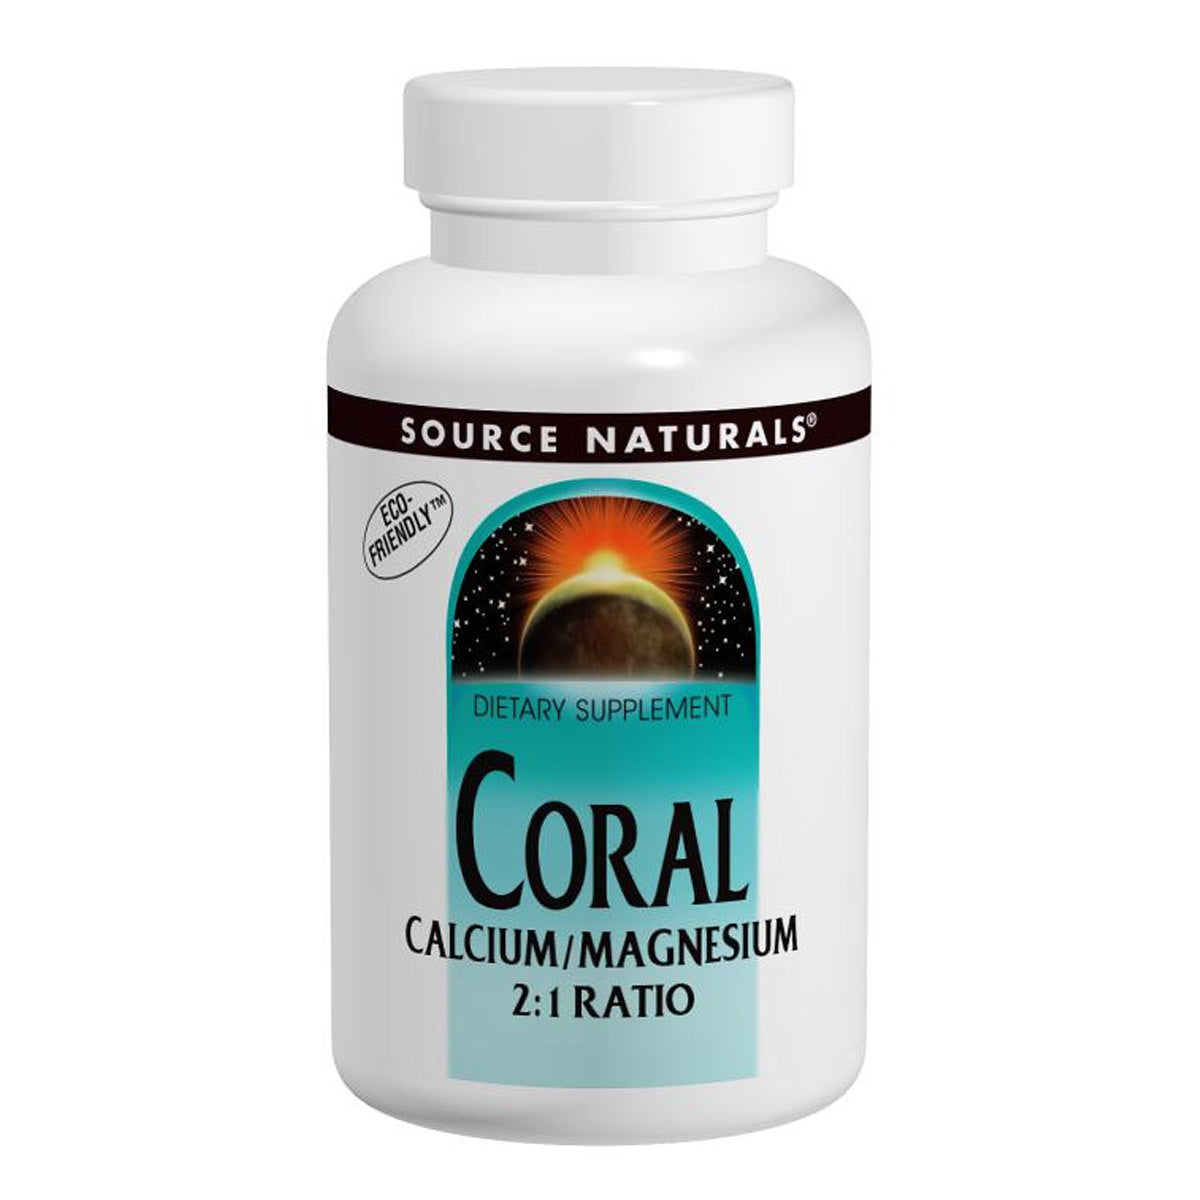 Primary image of Coral Calcium/Magnesium